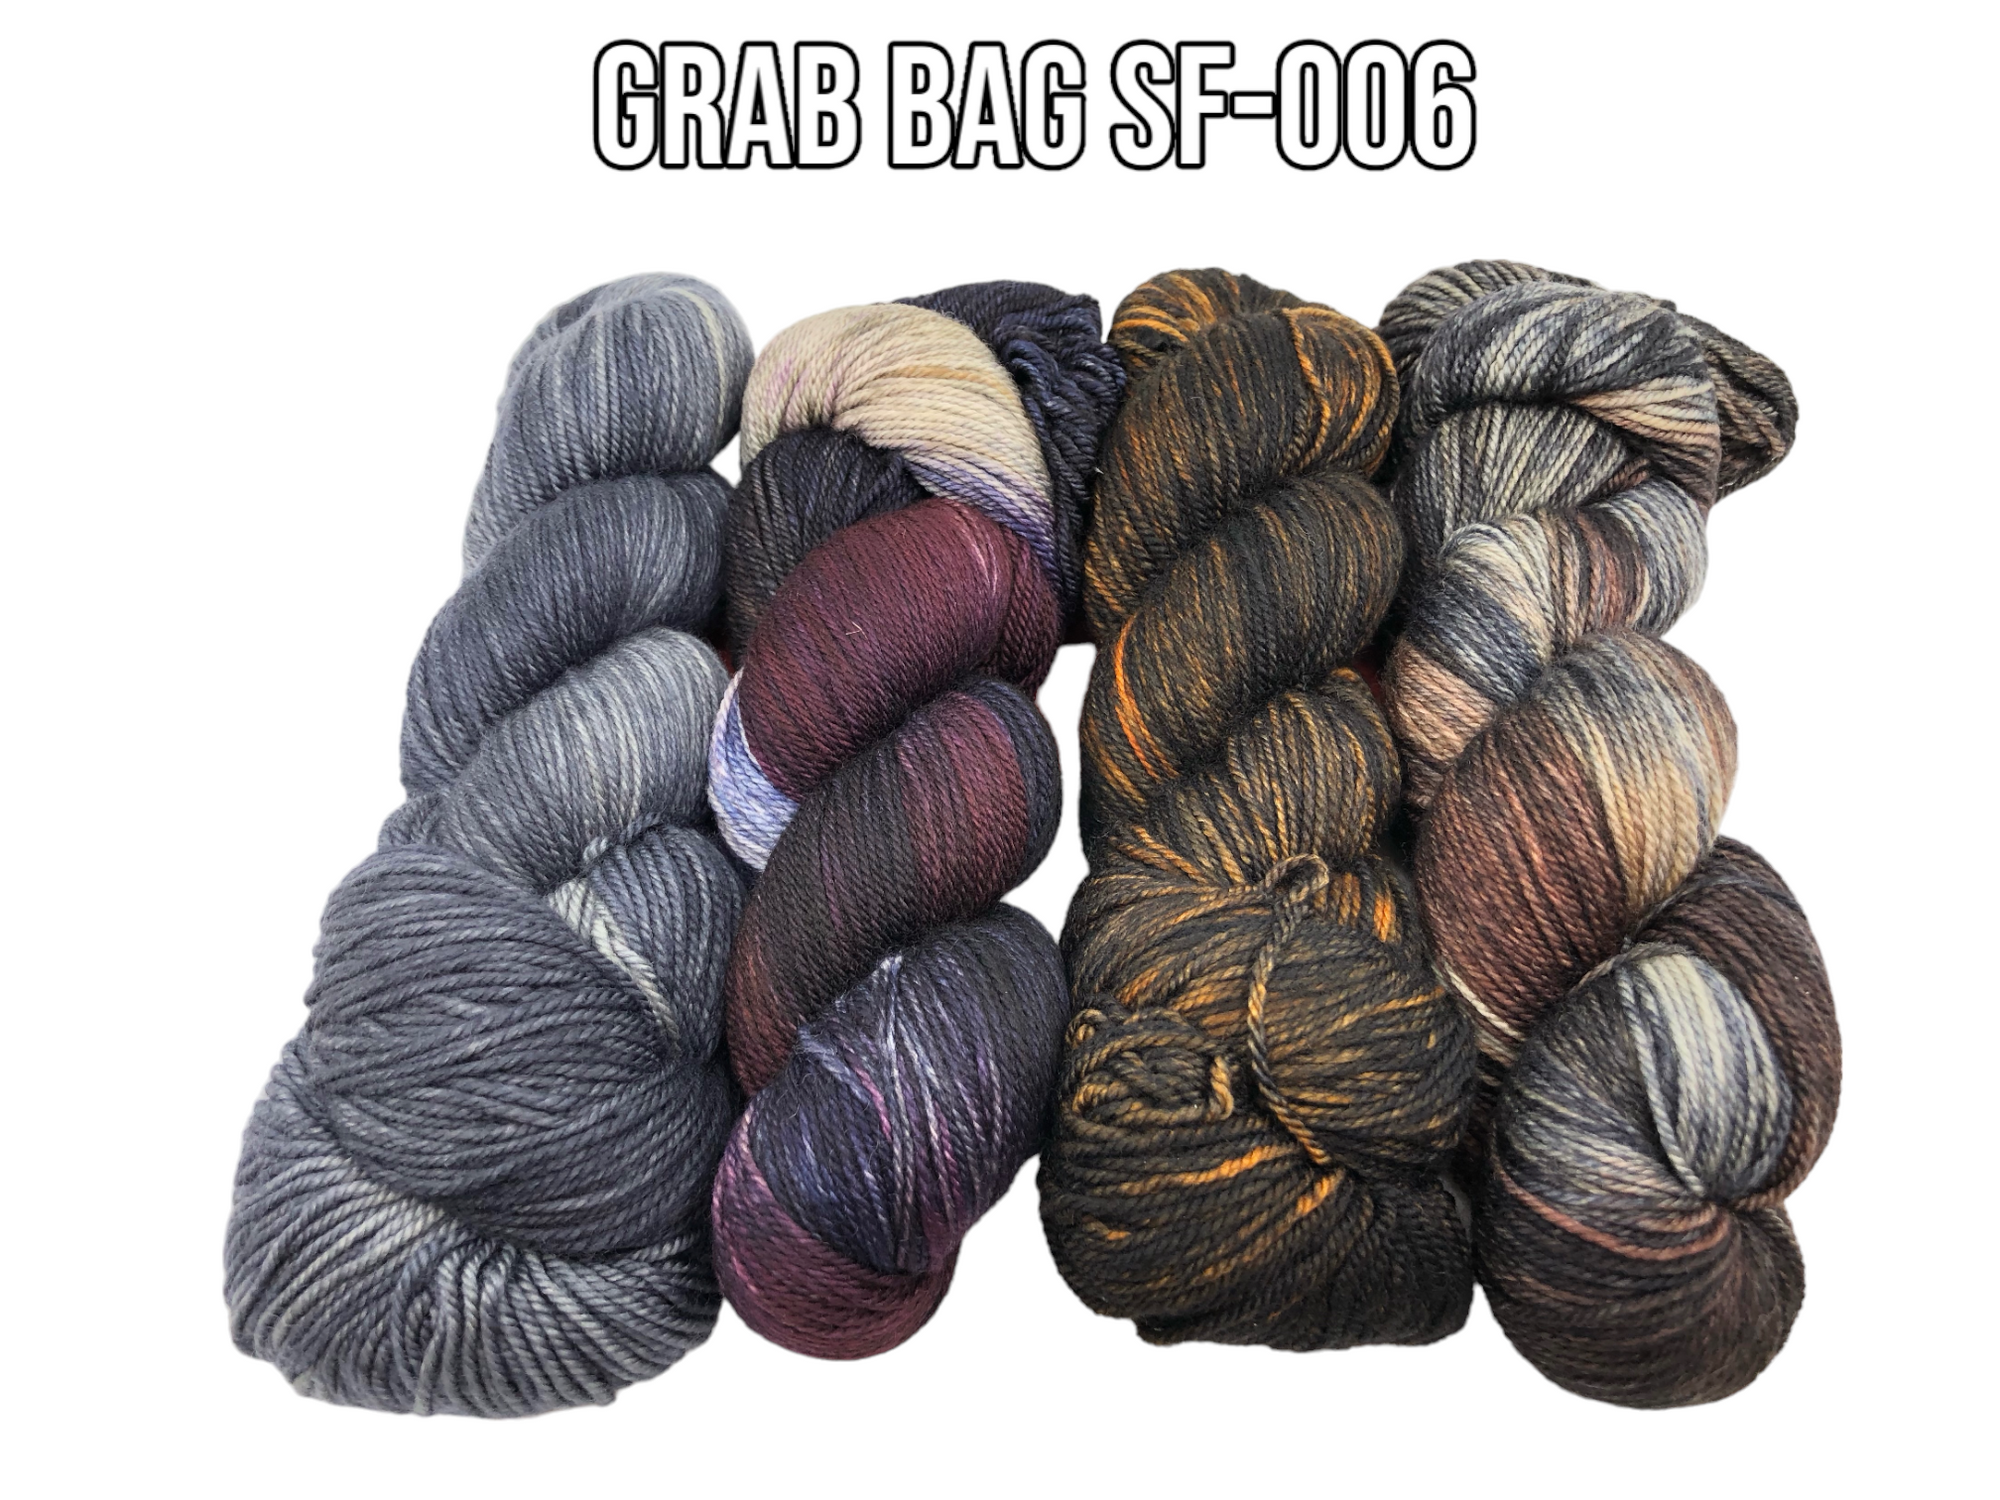 Grab Bag SF-006